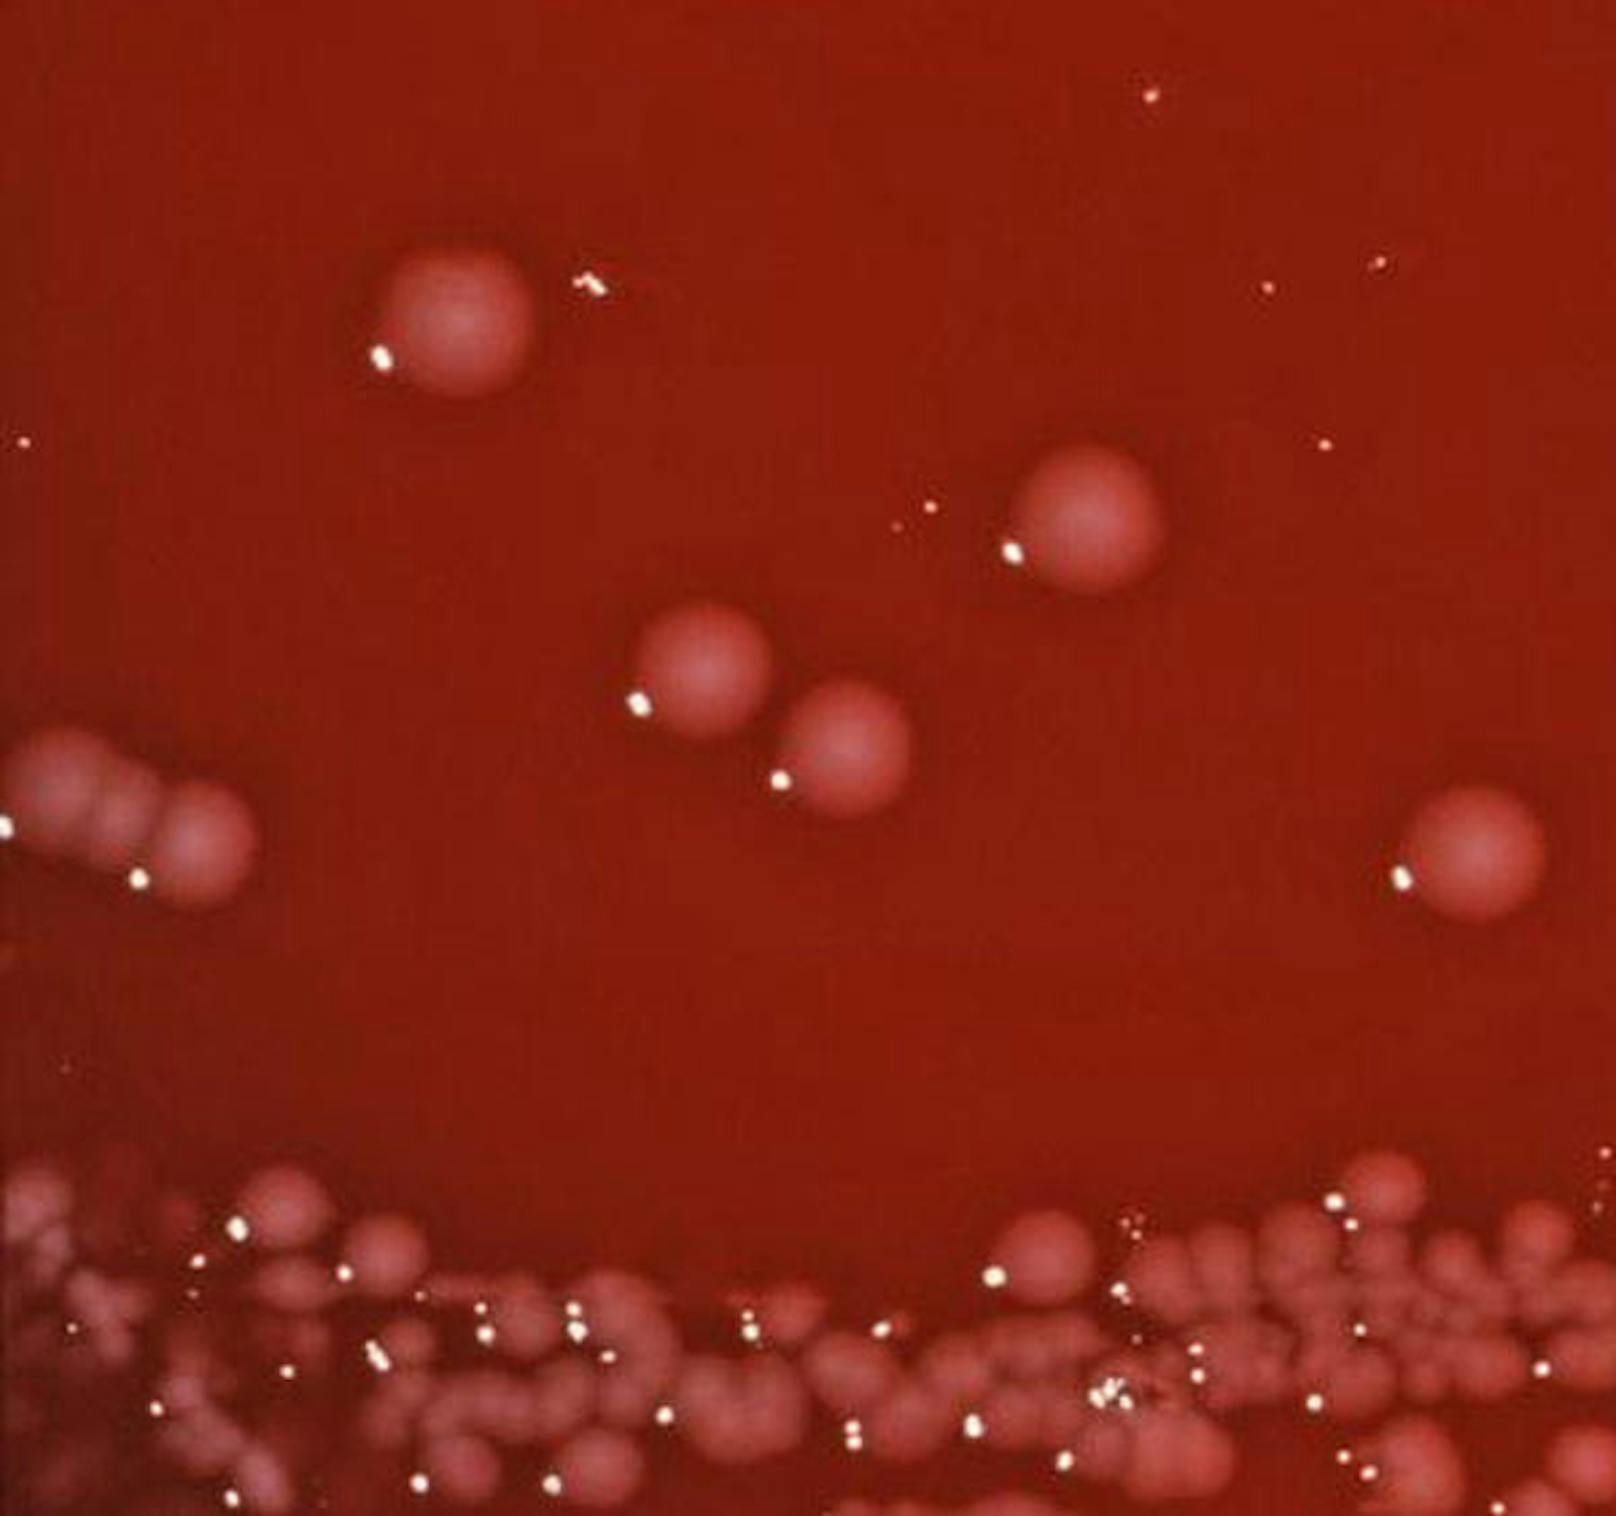 Shigella spp., Priorität 3: Shigella infizieren jährlich rund 160 Mio. Menschen.